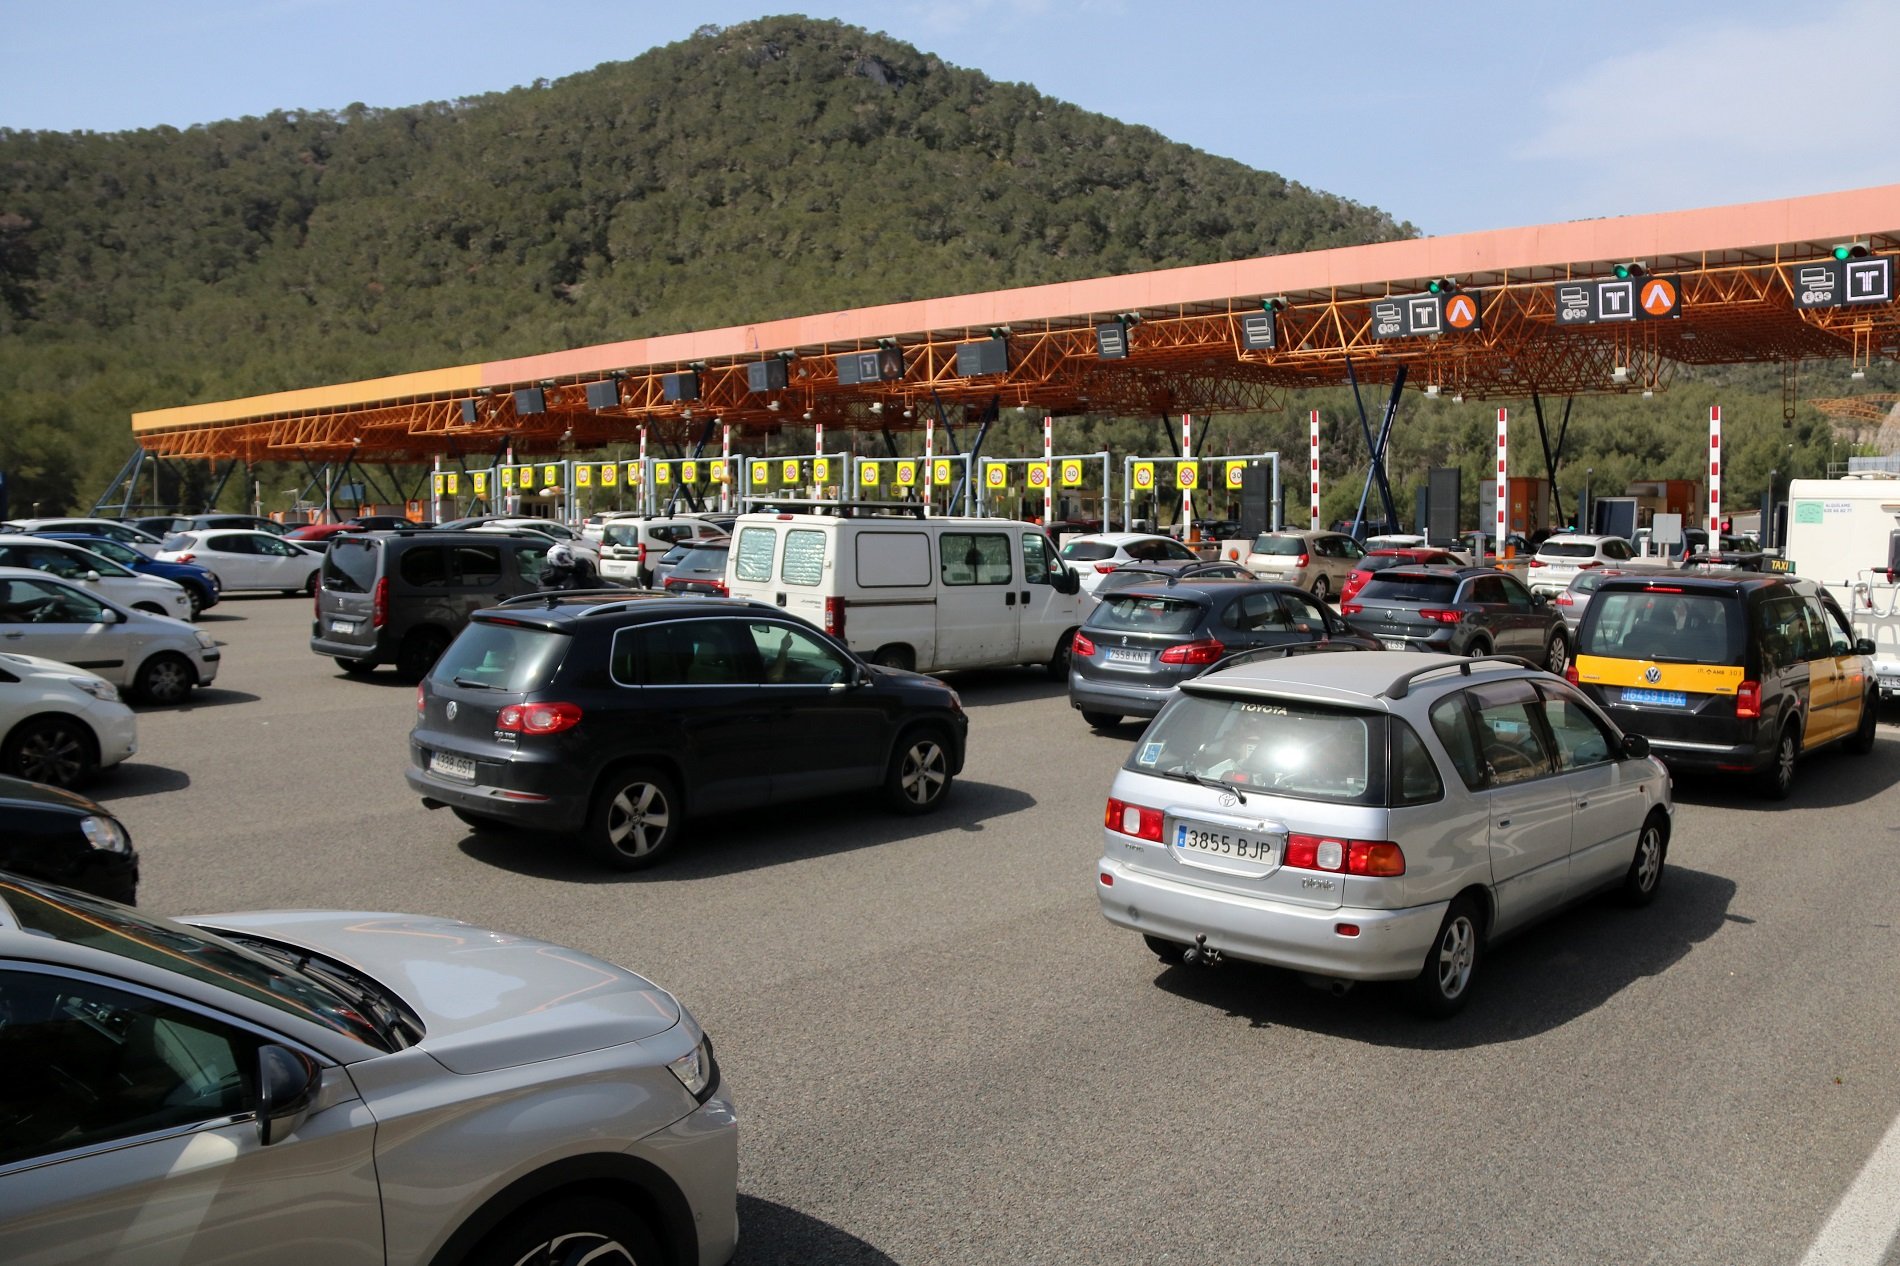 195.322 vehicles ja han tornat a l'àrea de Barcelona